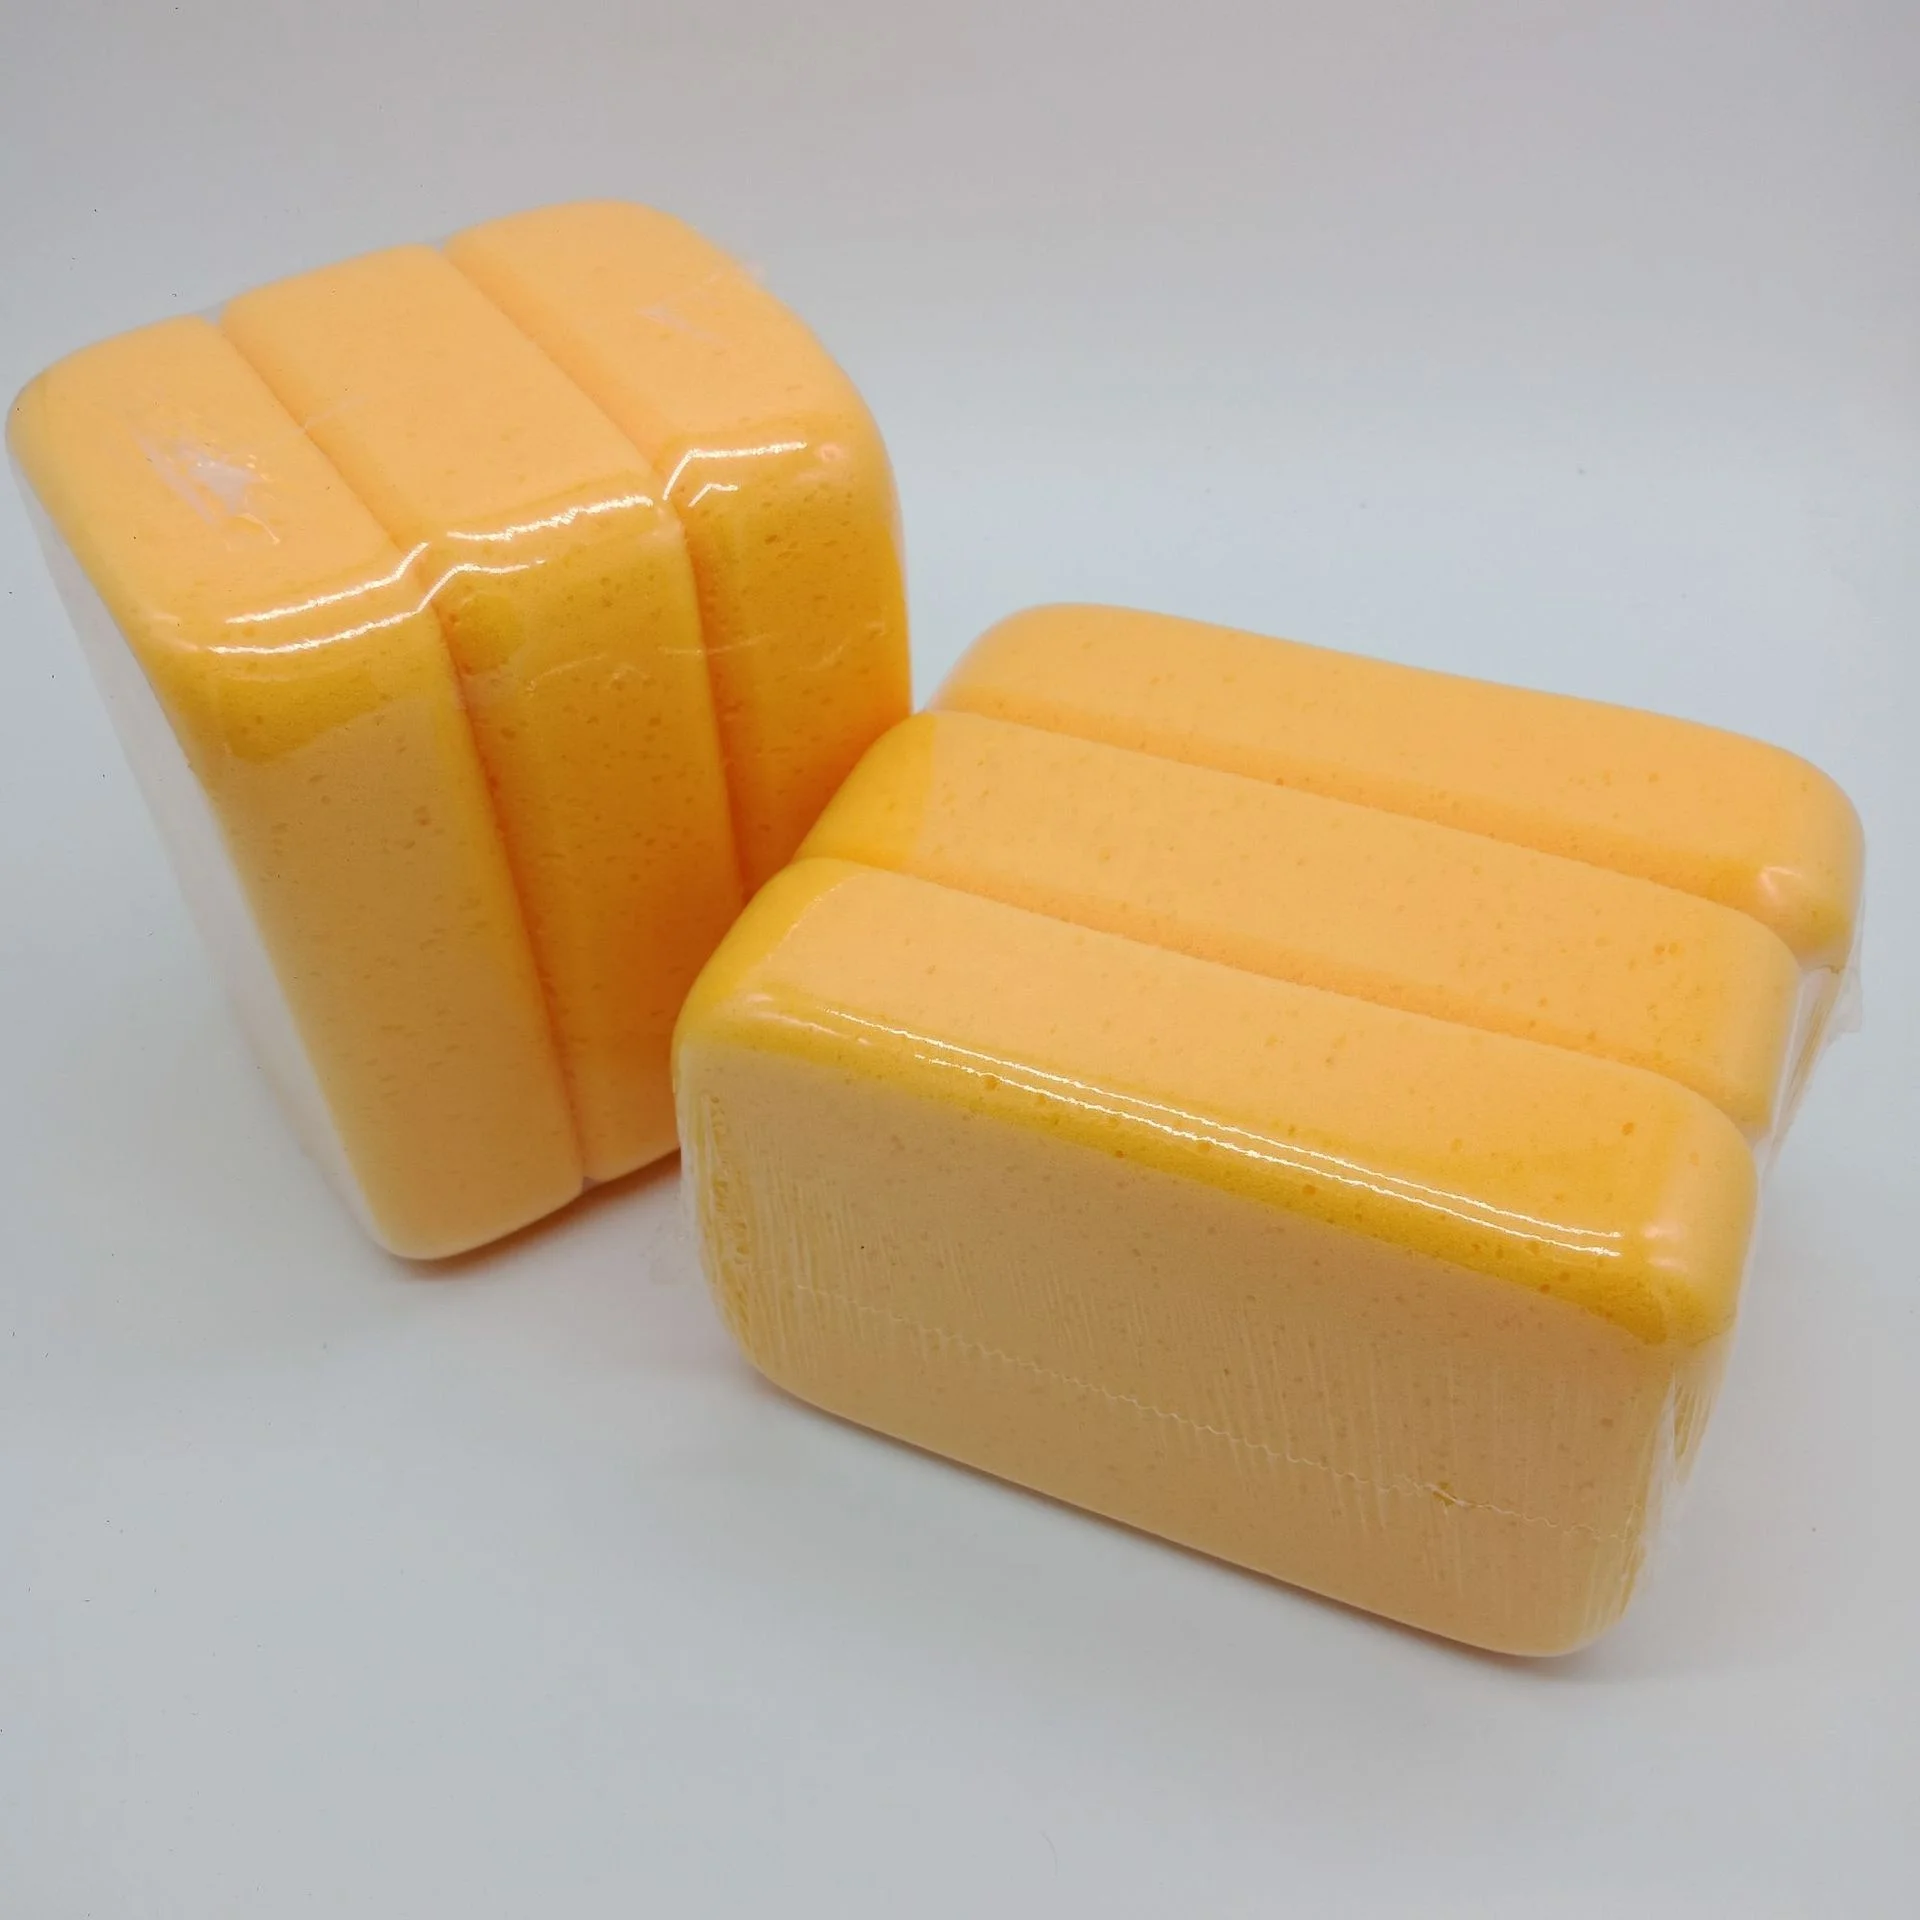 
High Density Ceramic Tile Grouting Sponge Special Cleaning Sponge Ceramic Tile Cleaning Sponge 